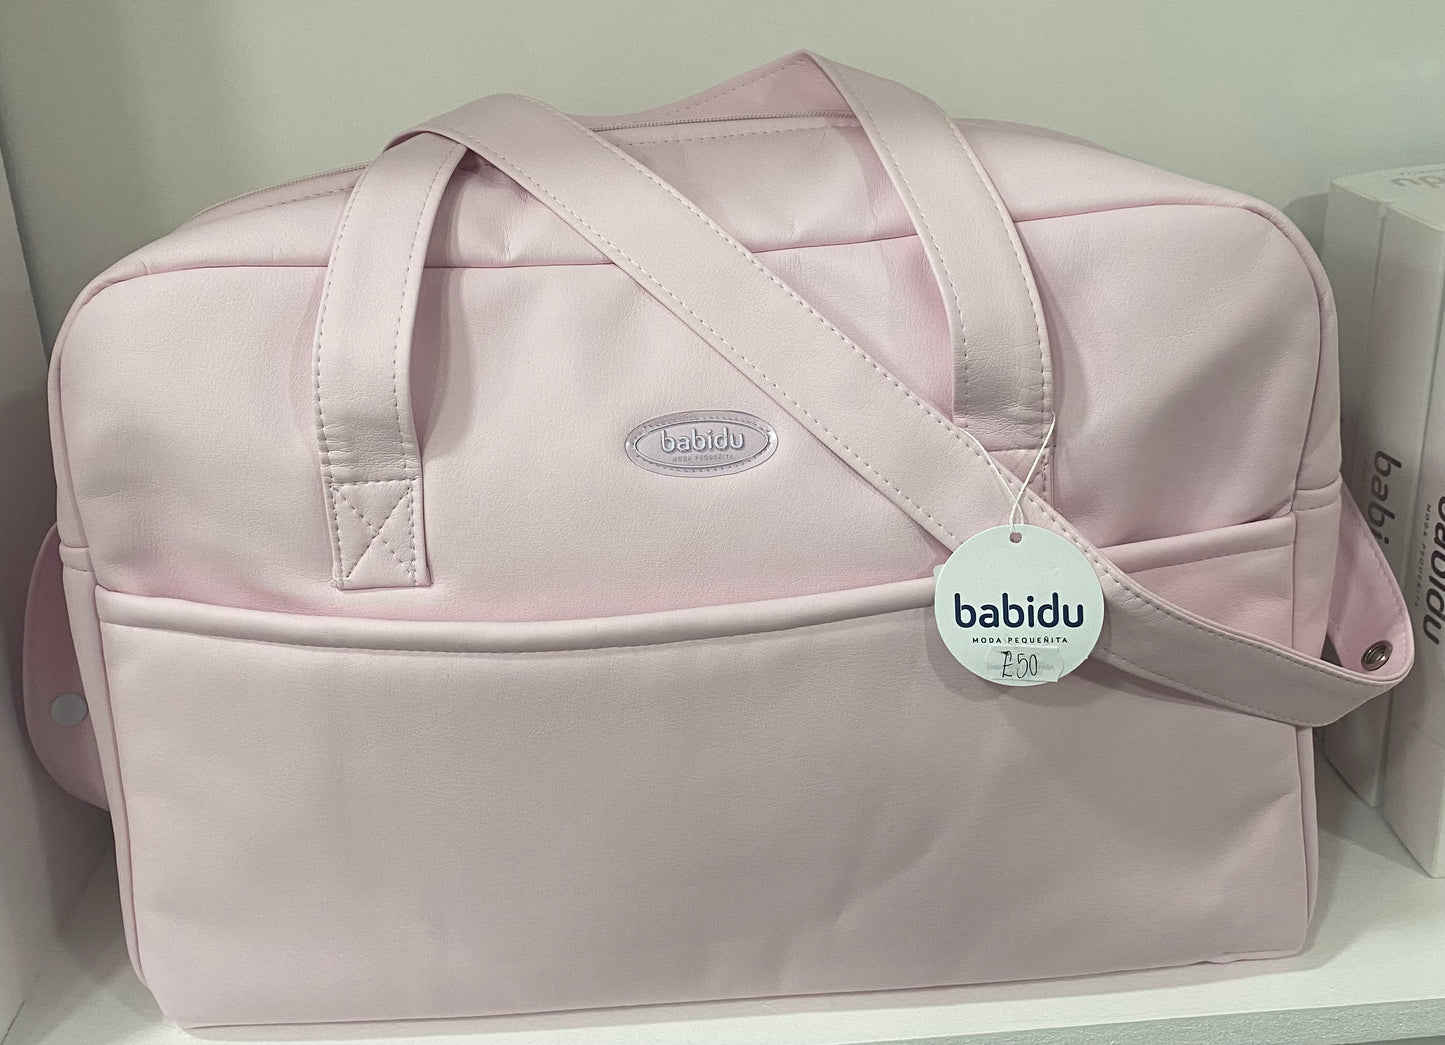 Babidu Maternal Bag